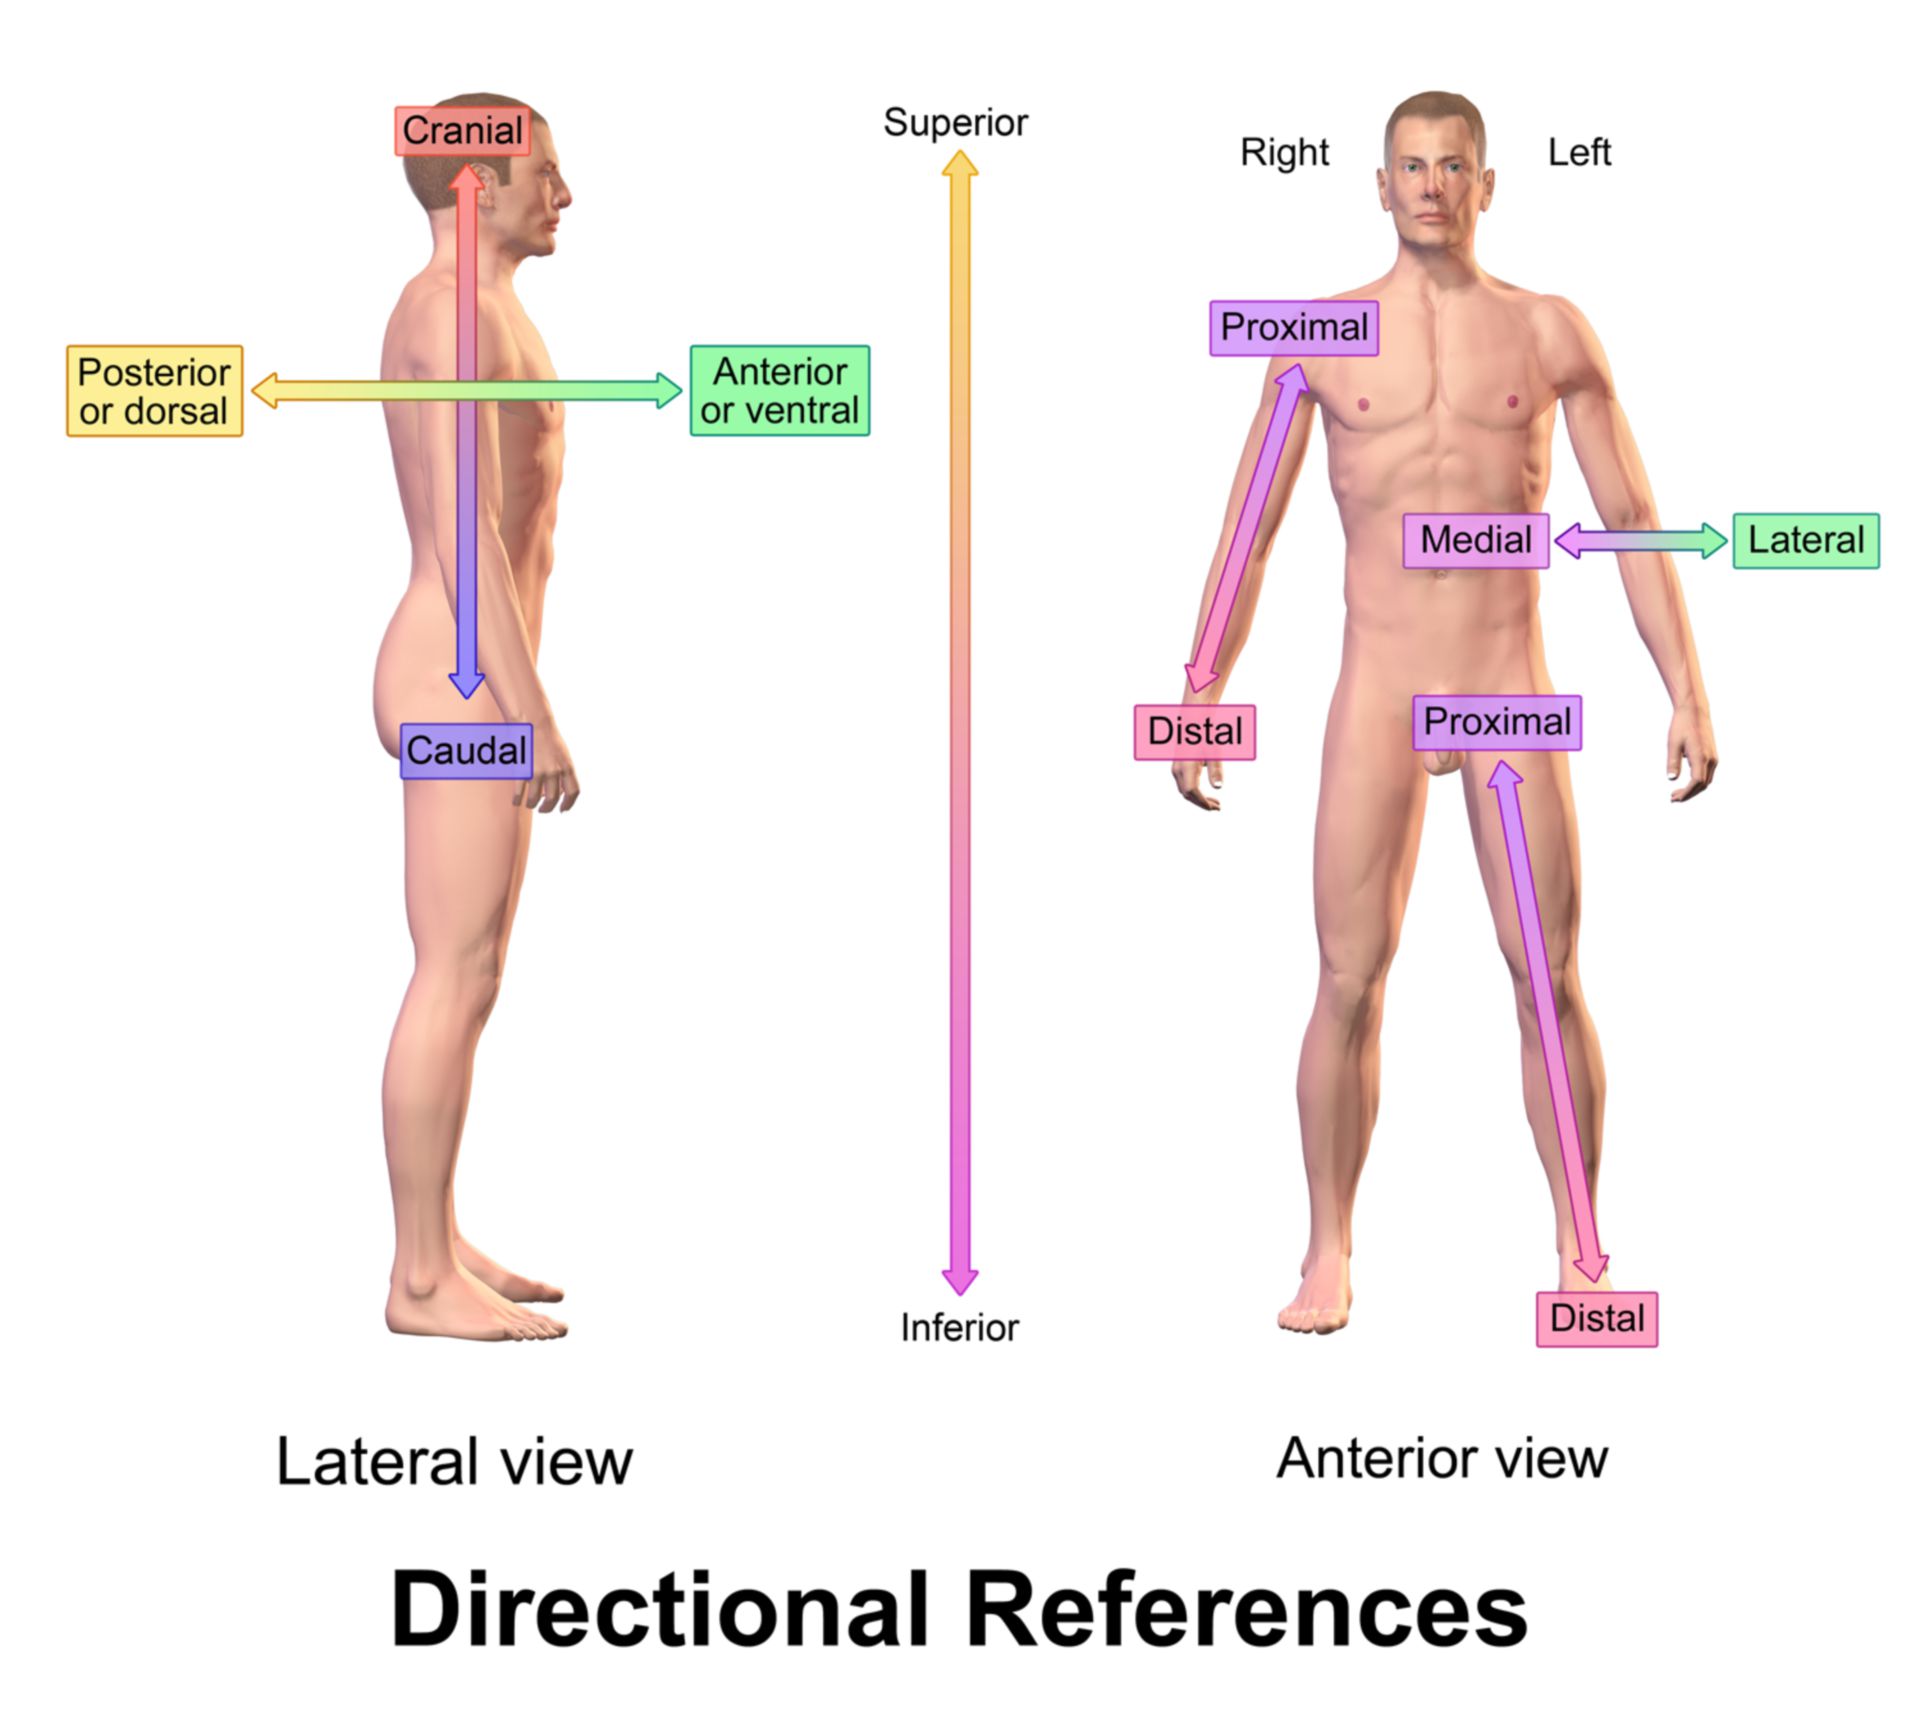 Sistema de referencias en anatomia